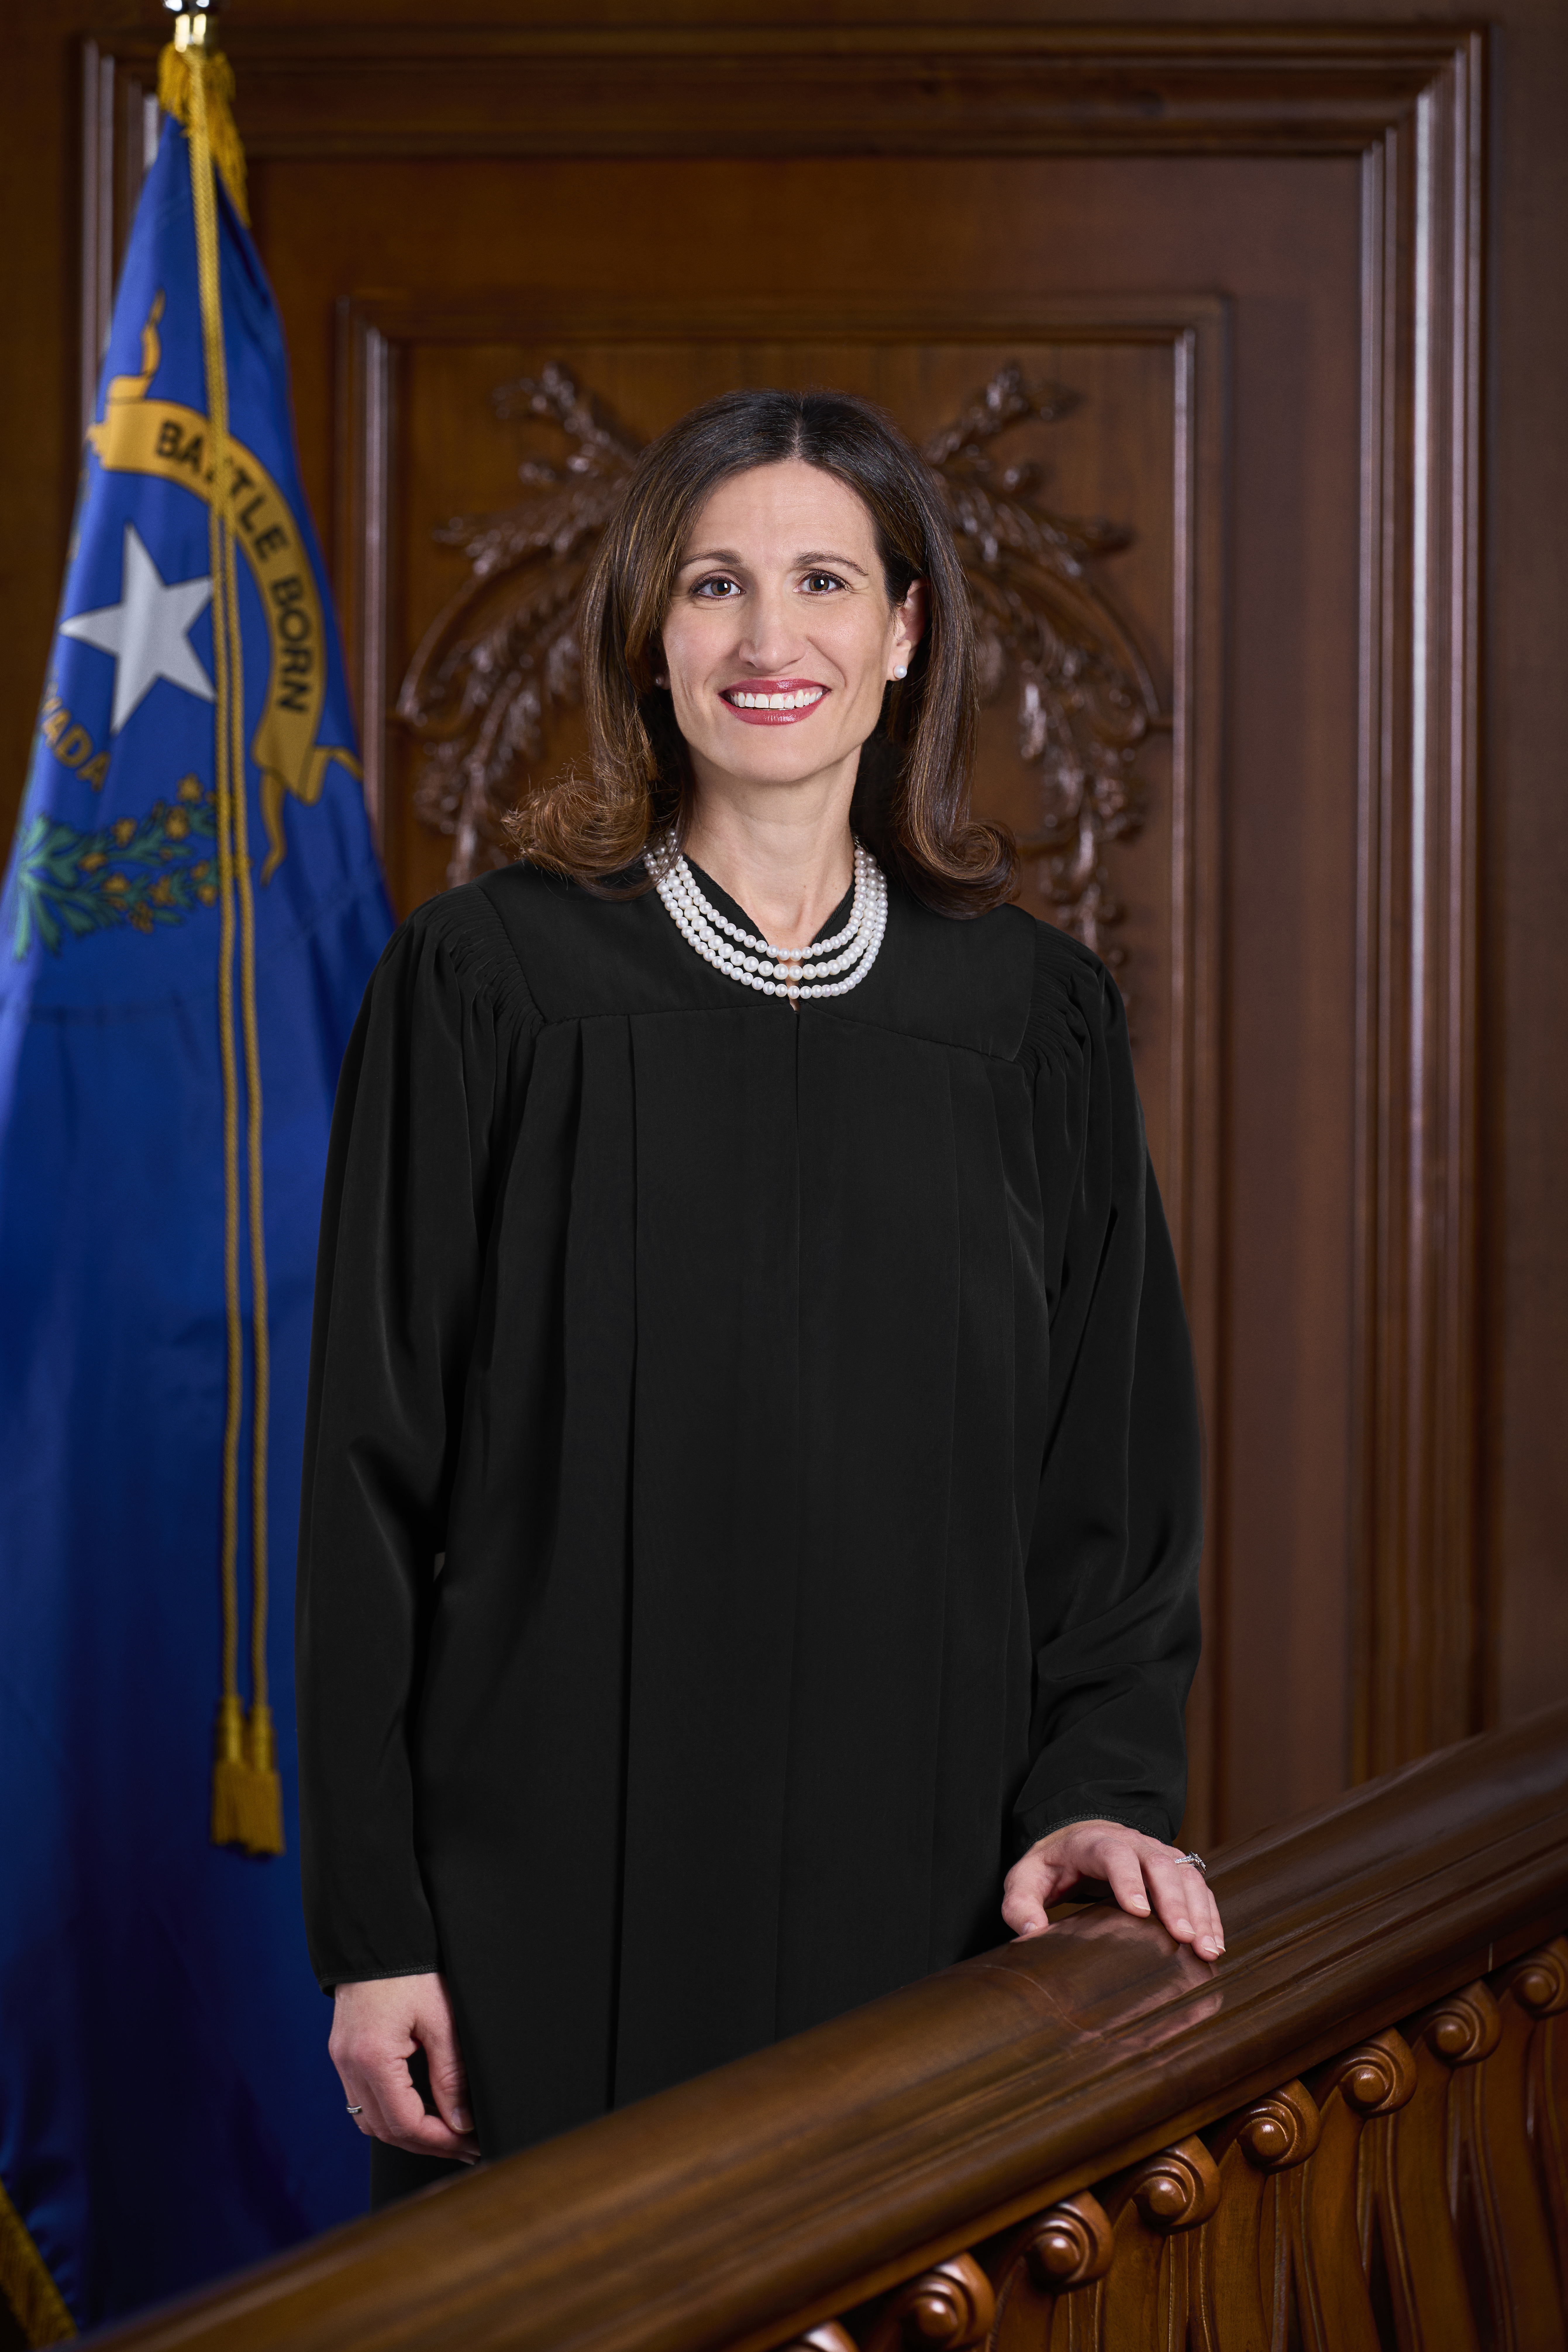 Judge Deborah Westbrook